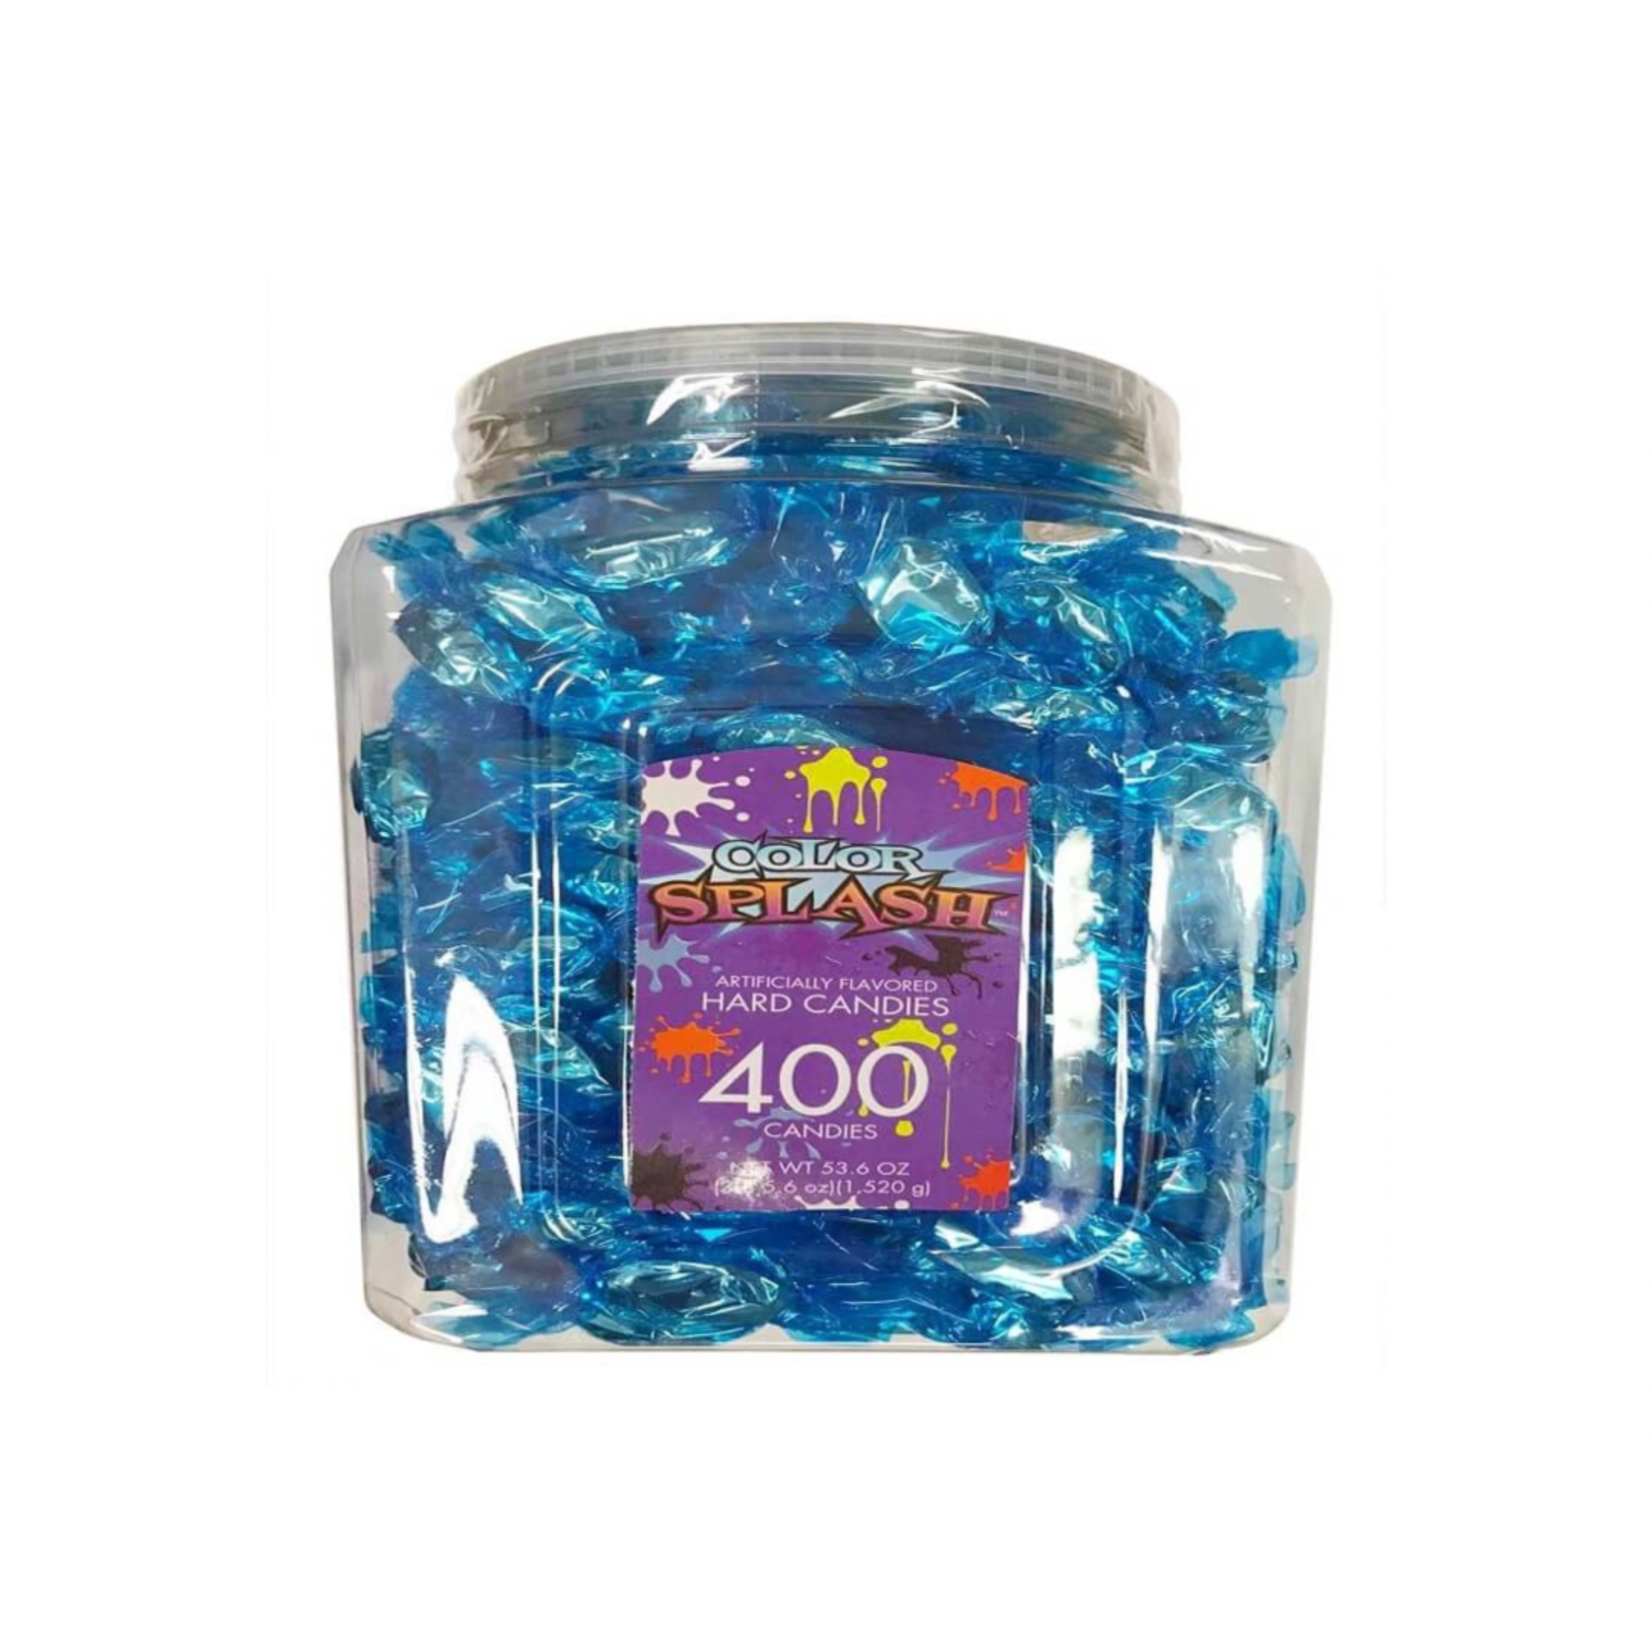 Color Splash Hard Candy Jar 400ct